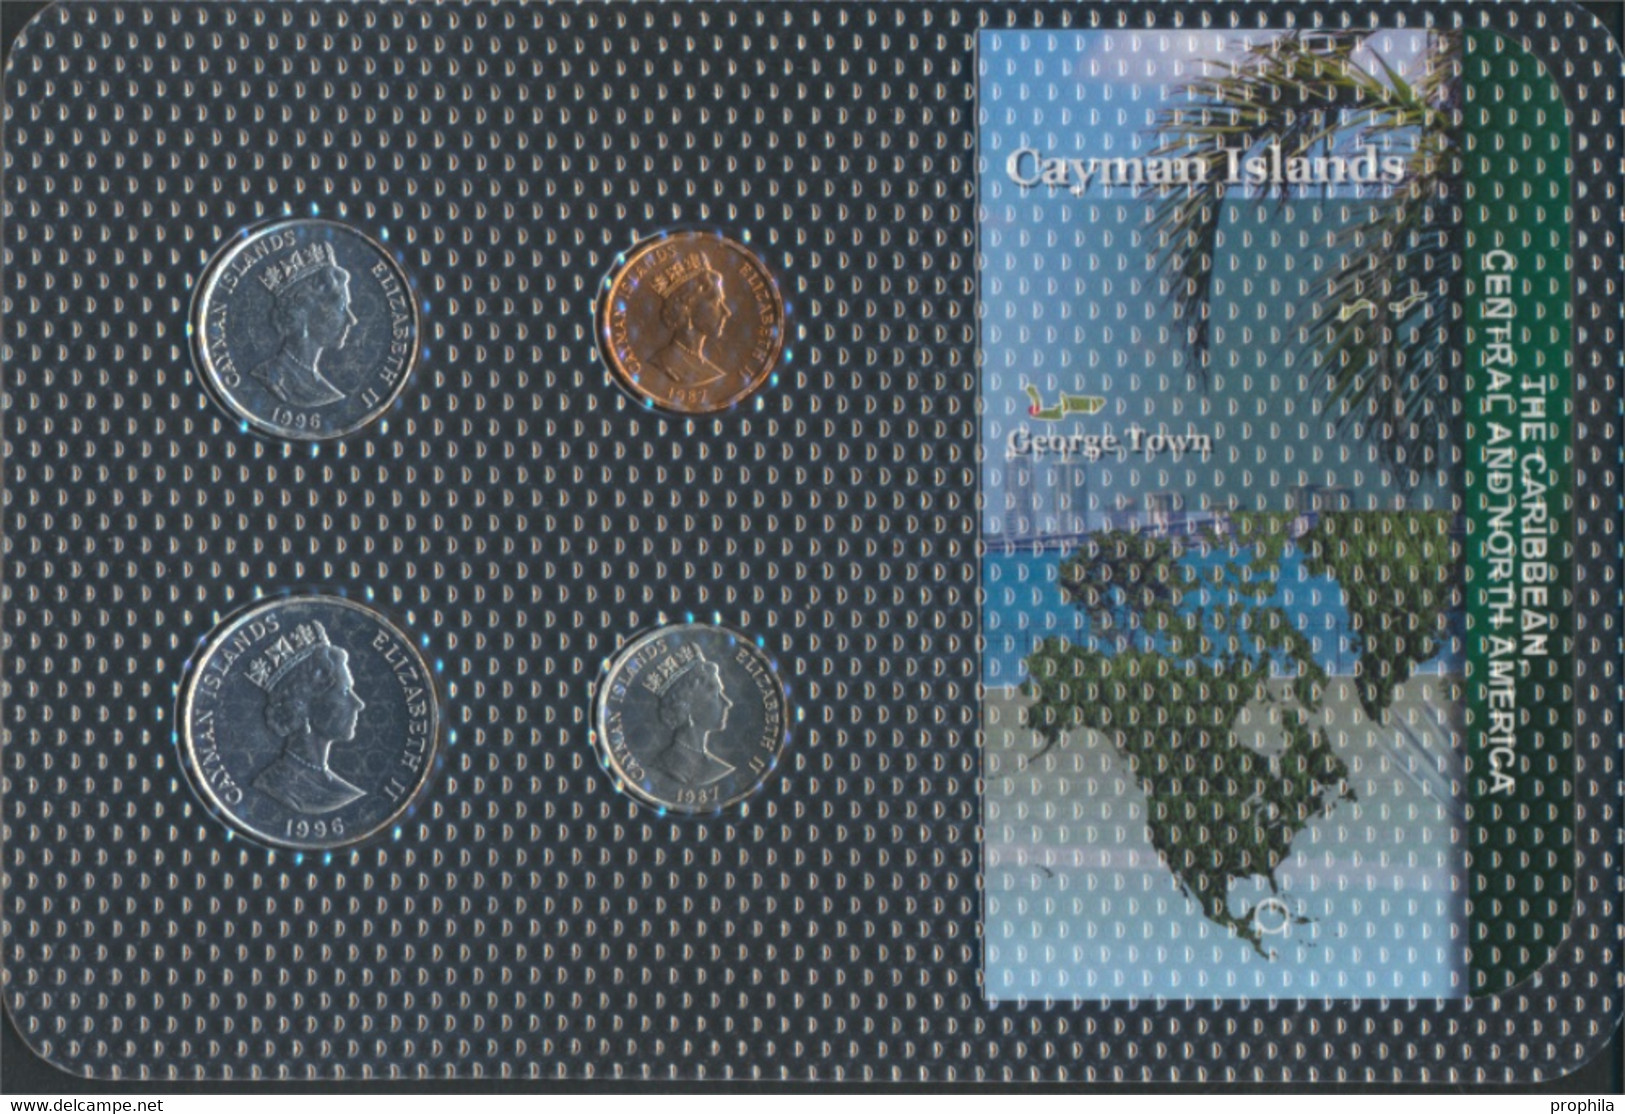 Kaimaninseln Stgl./unzirkuliert Kursmünzen Stgl./unzirkuliert Ab 1987 1 Cent Bis 25 Cents (9648528 - Kaimaninseln